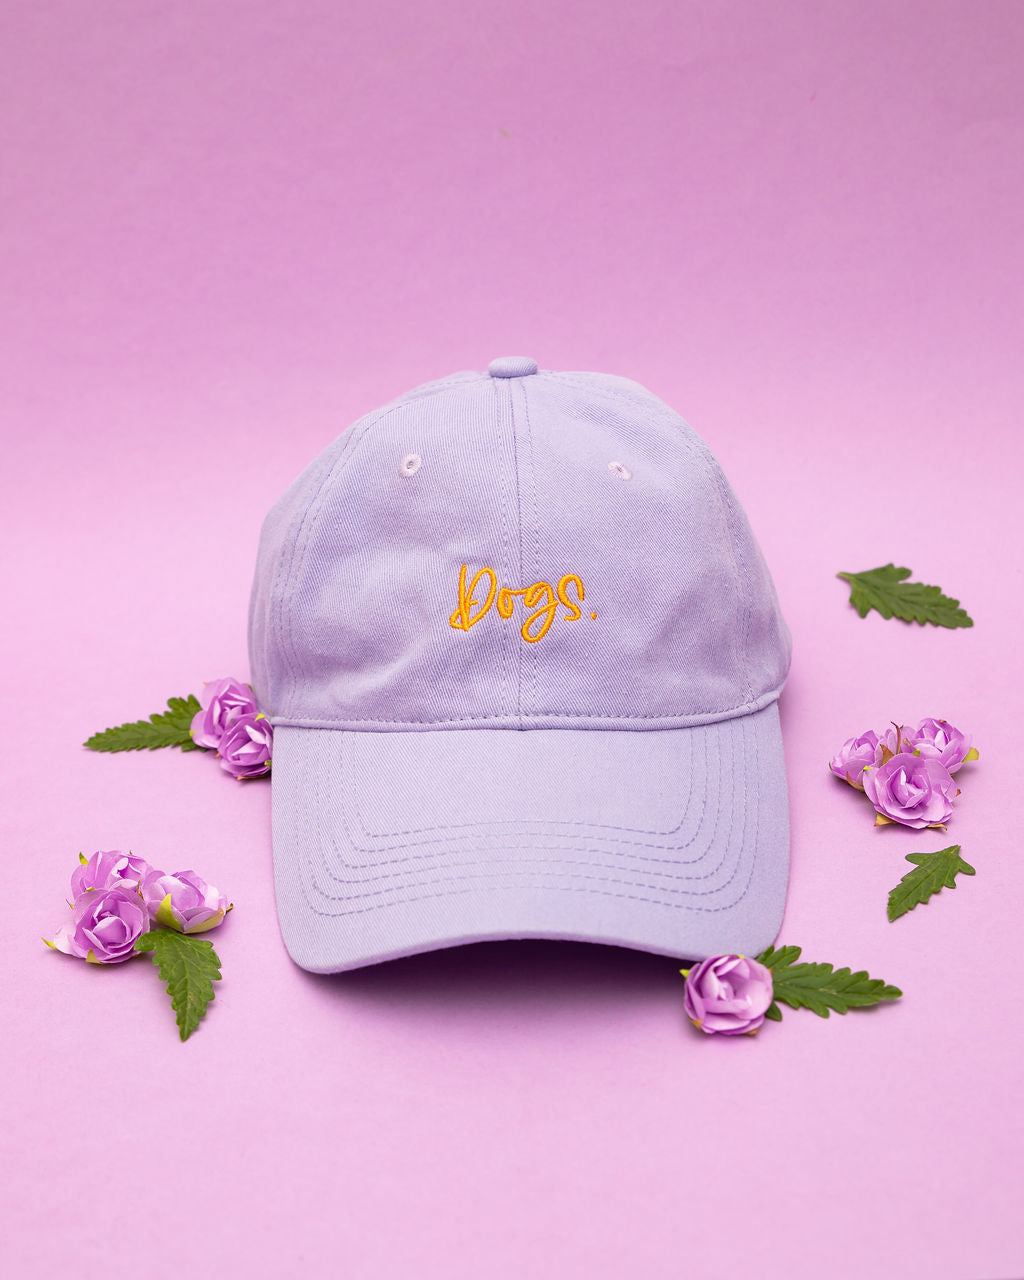 Dogs - Cap